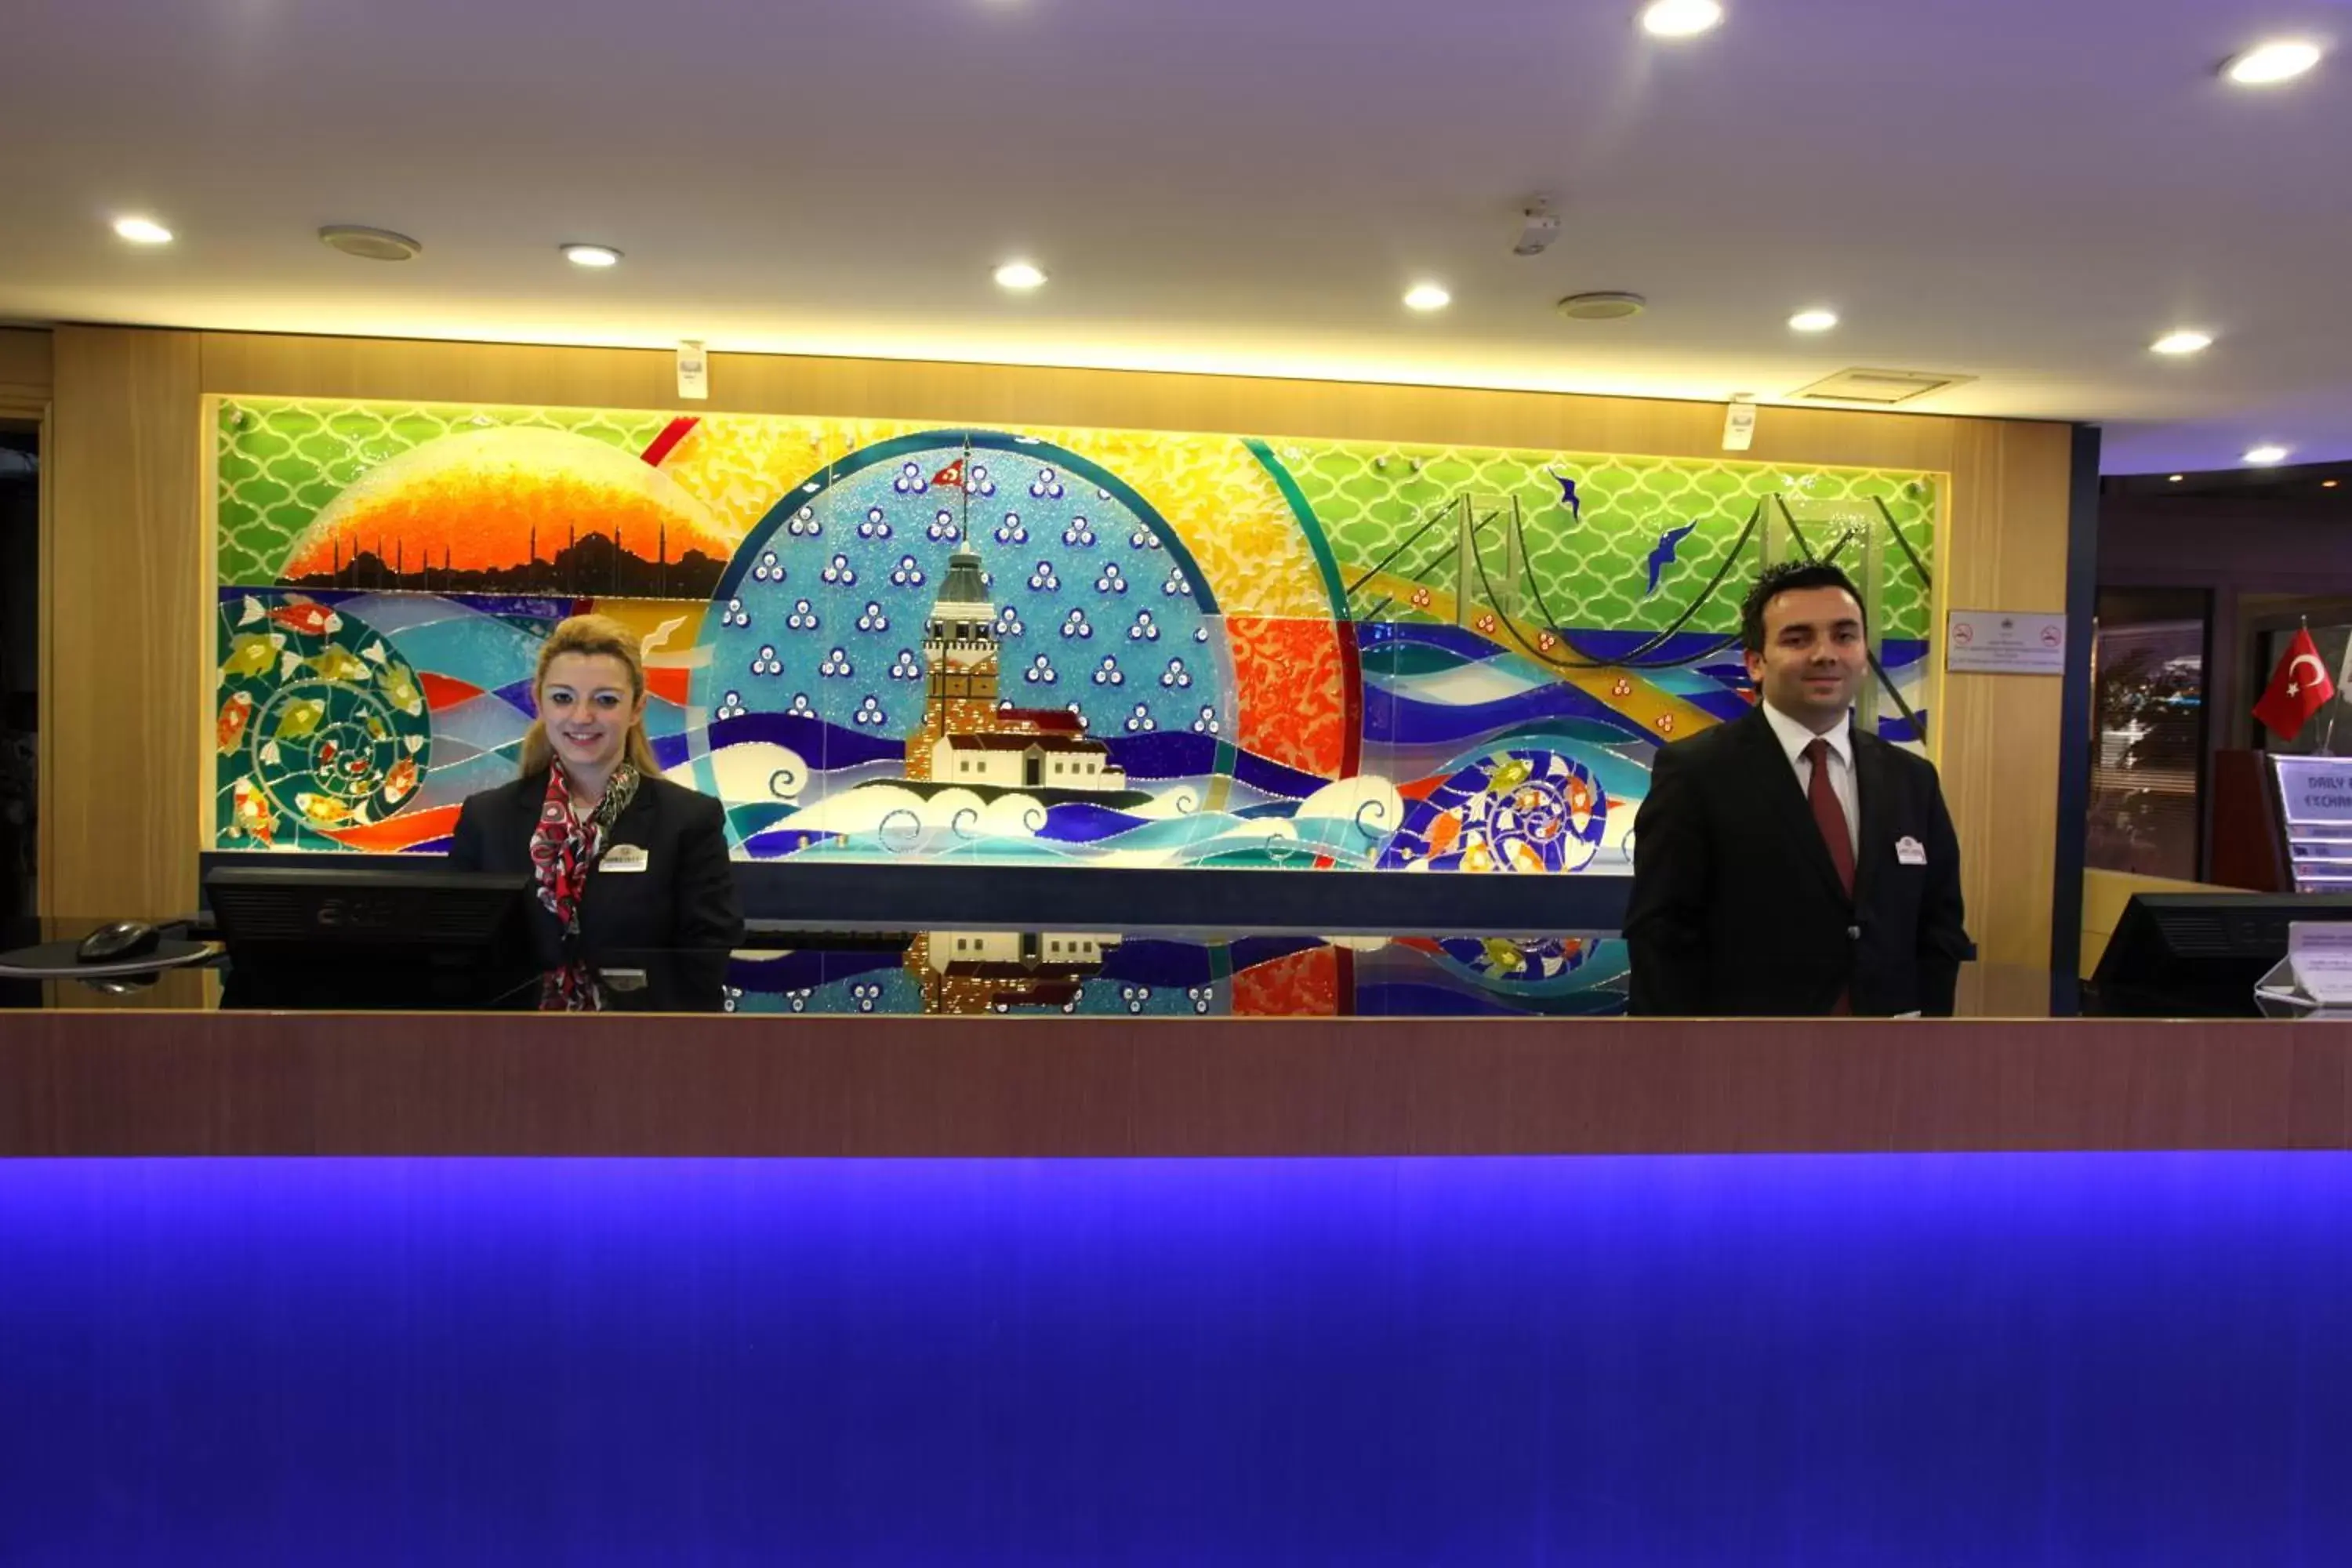 Lobby or reception in Güneş Hotel Merter